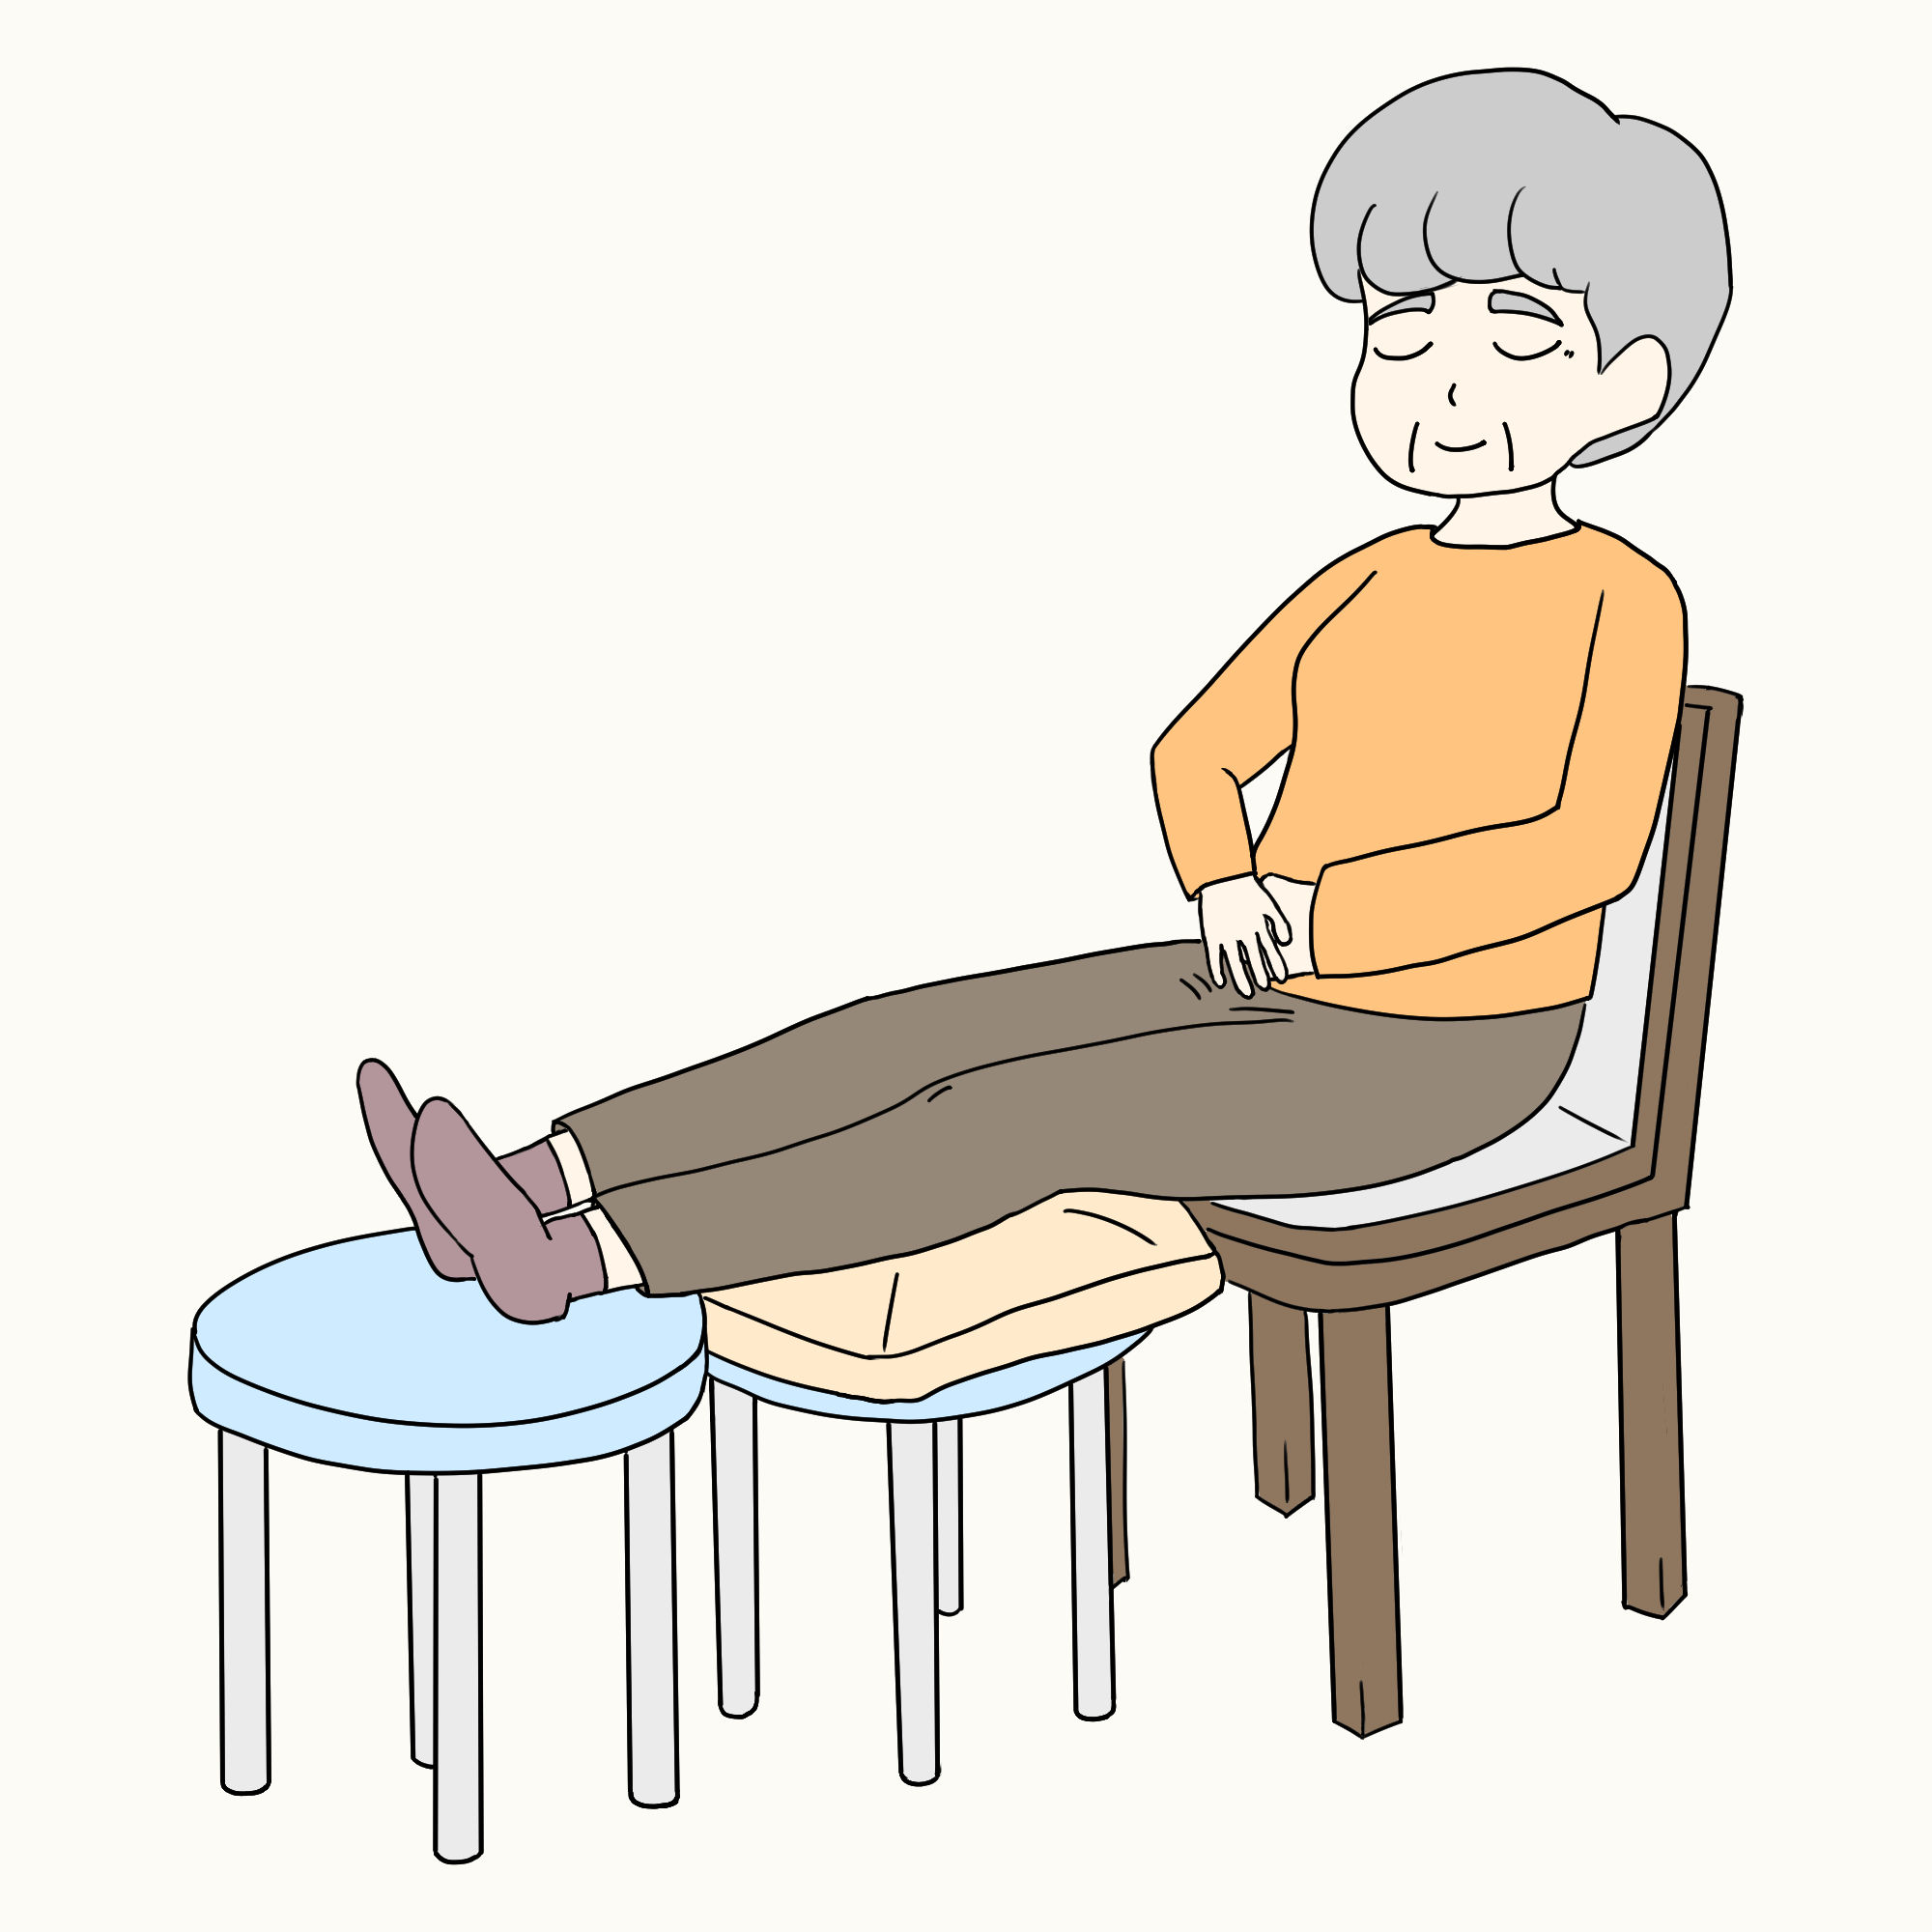 医師監修 高齢者の足のむくみの原因は何 慢性下肢浮腫の症状や予防 対策法を紹介 サービス付き高齢者向け住宅の学研ココファン